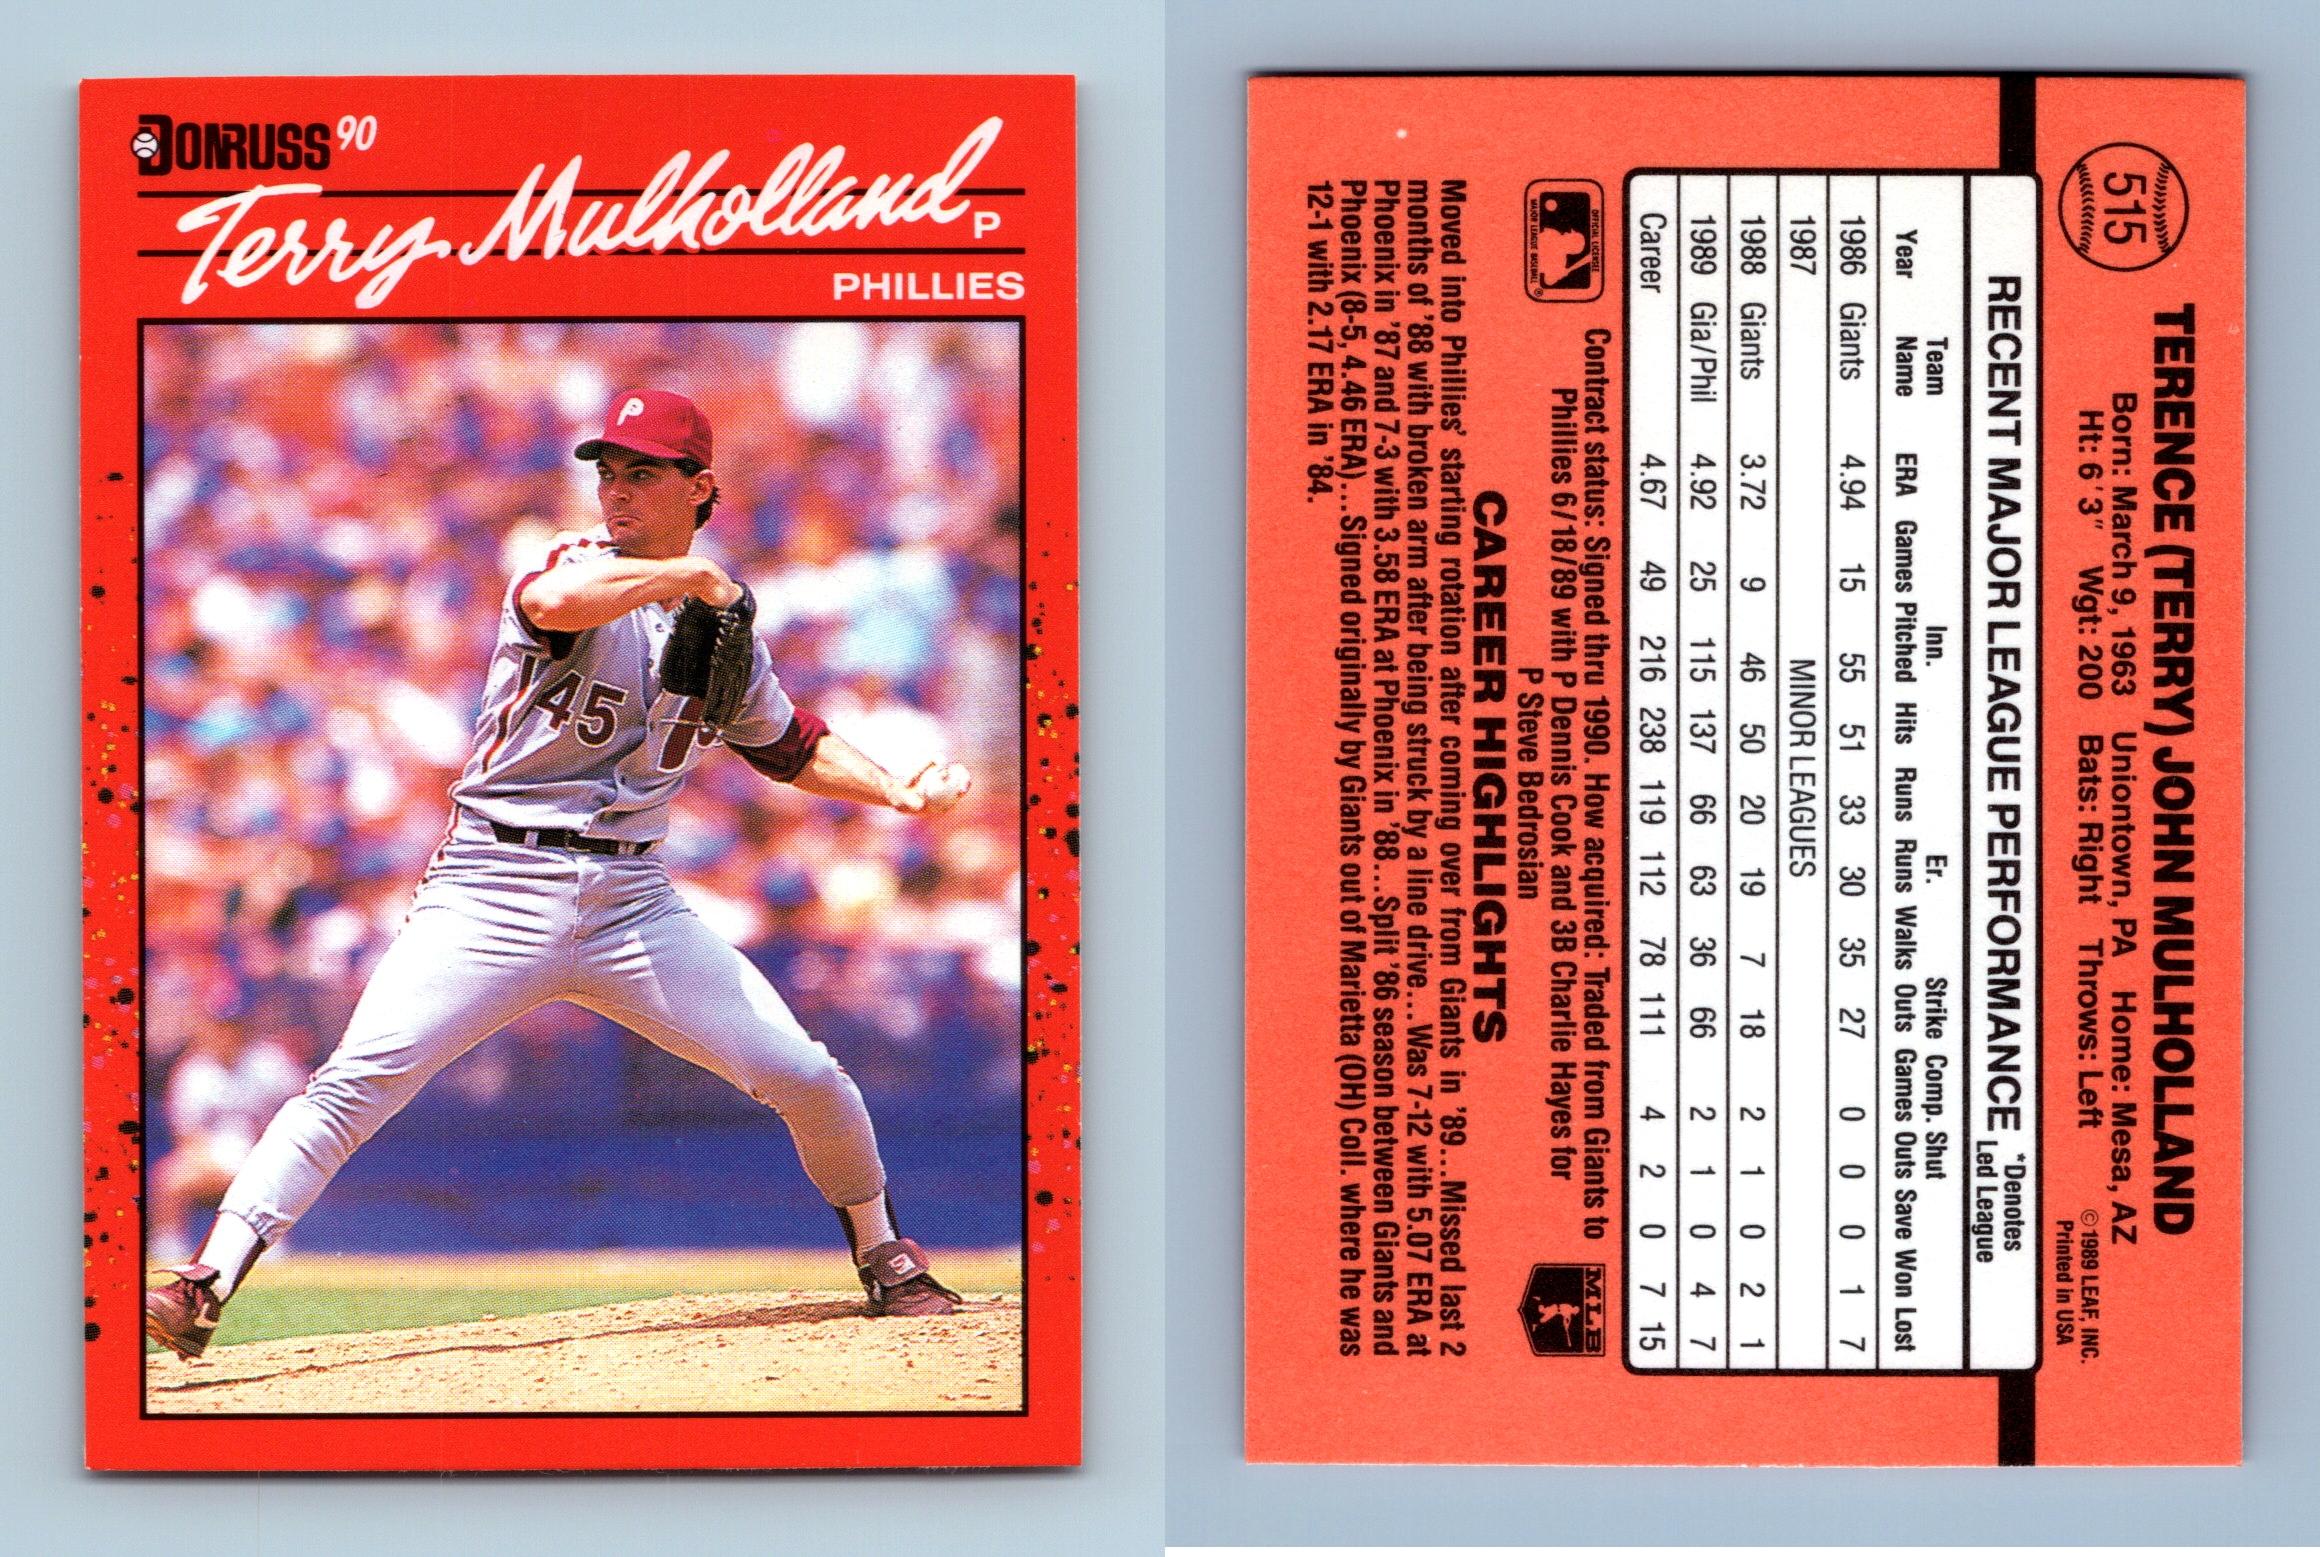 Jose Gonzalez - Dodgers #314 Donruss 1990 Baseball Trading Card